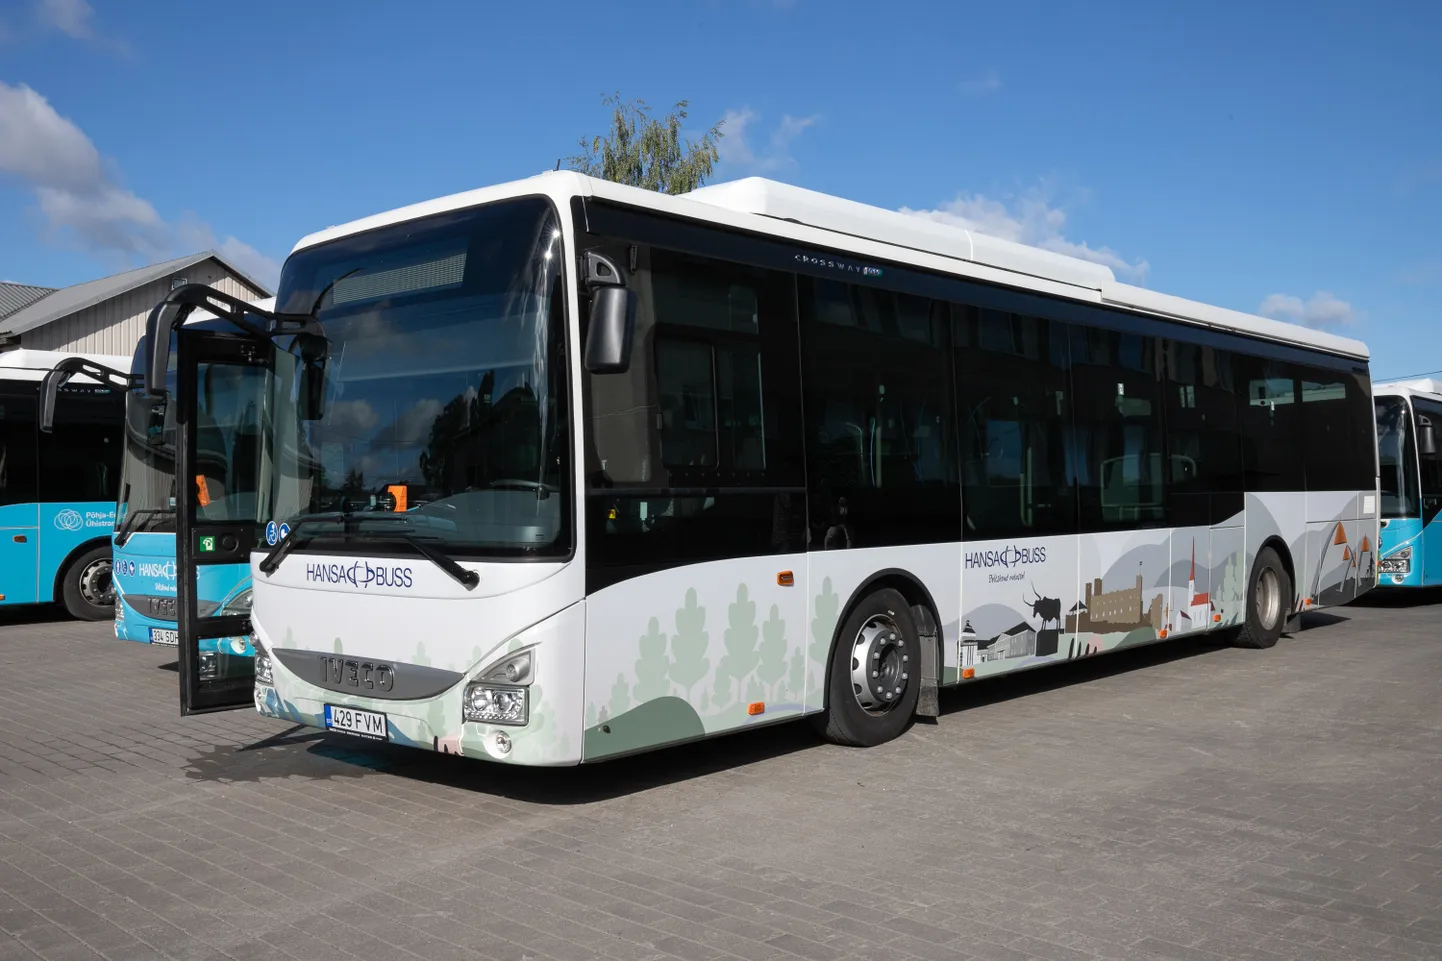 Jõgevalt Tartusse Elroni reisijaid vedanud Hansabussi bussijuhile oli see esimene kord sel liinil sõita.